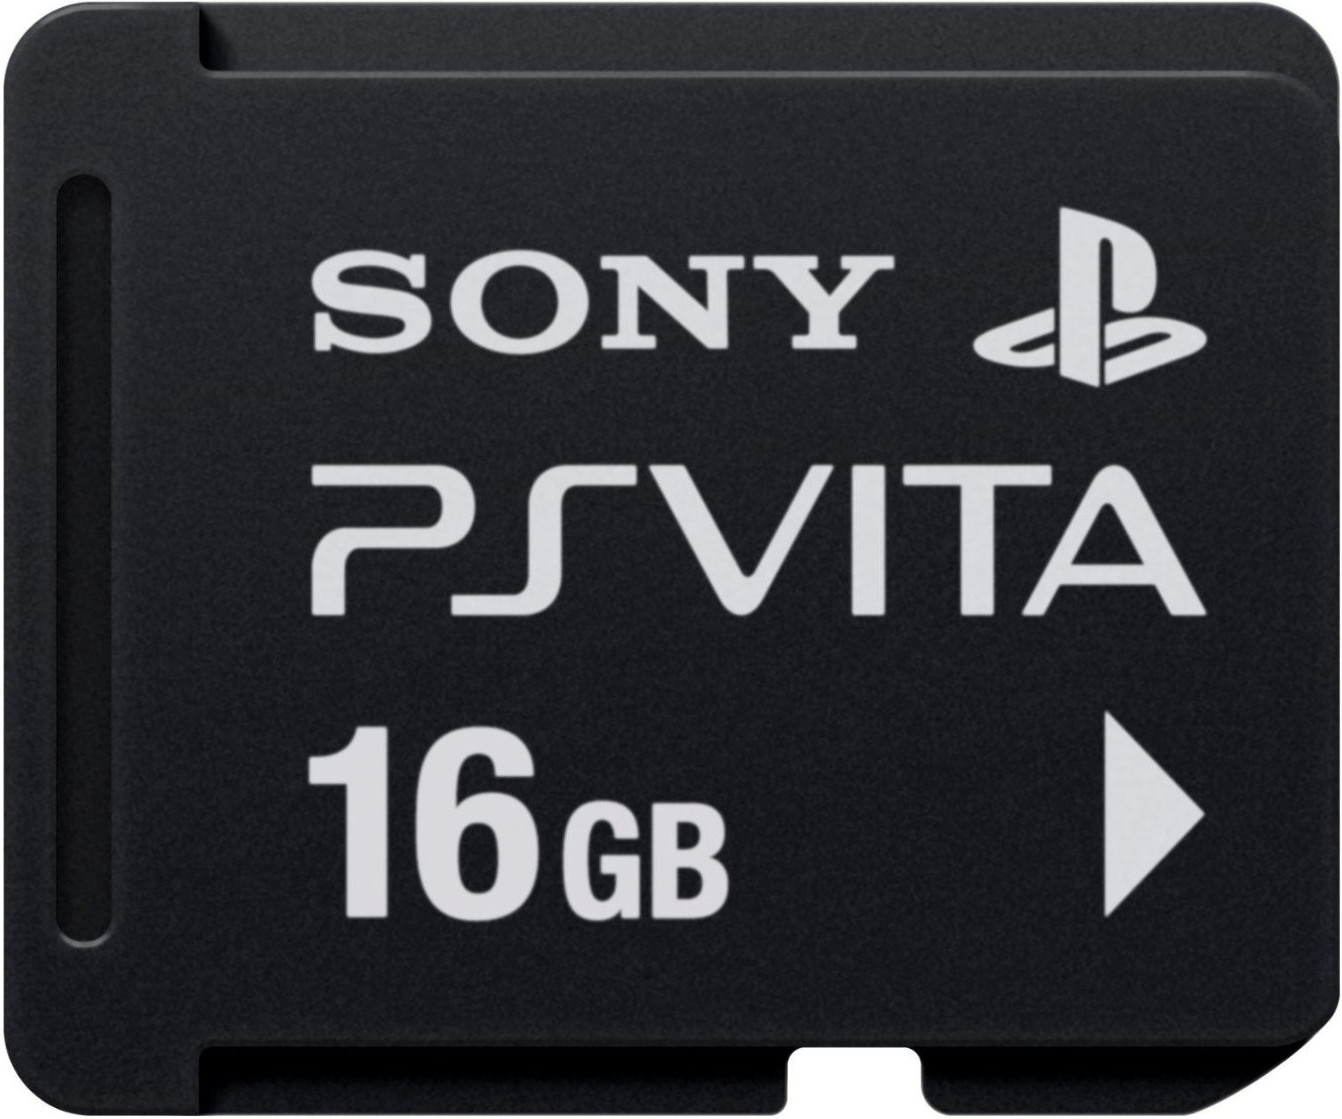 Sony Playstation Vita 16 GB Memorycard